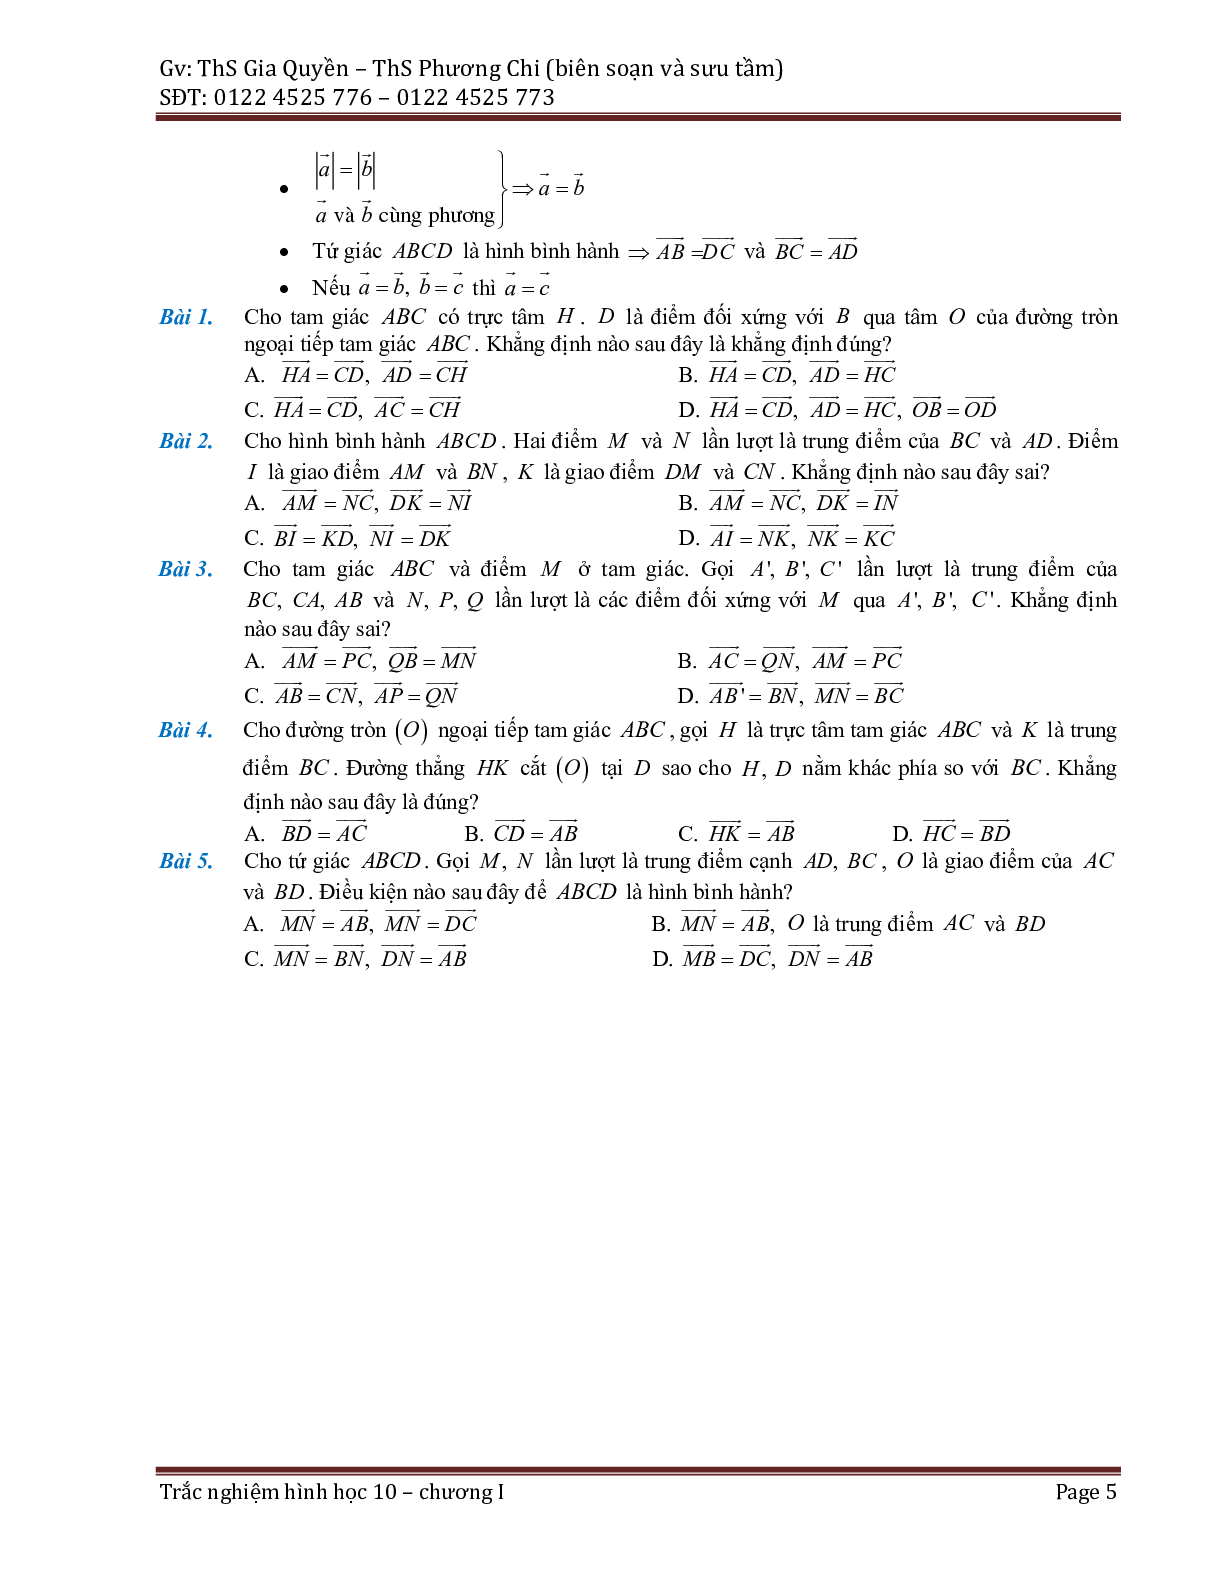 Phân dạng và bài tập trắc nghiệm chuyên đề vector (trang 5)